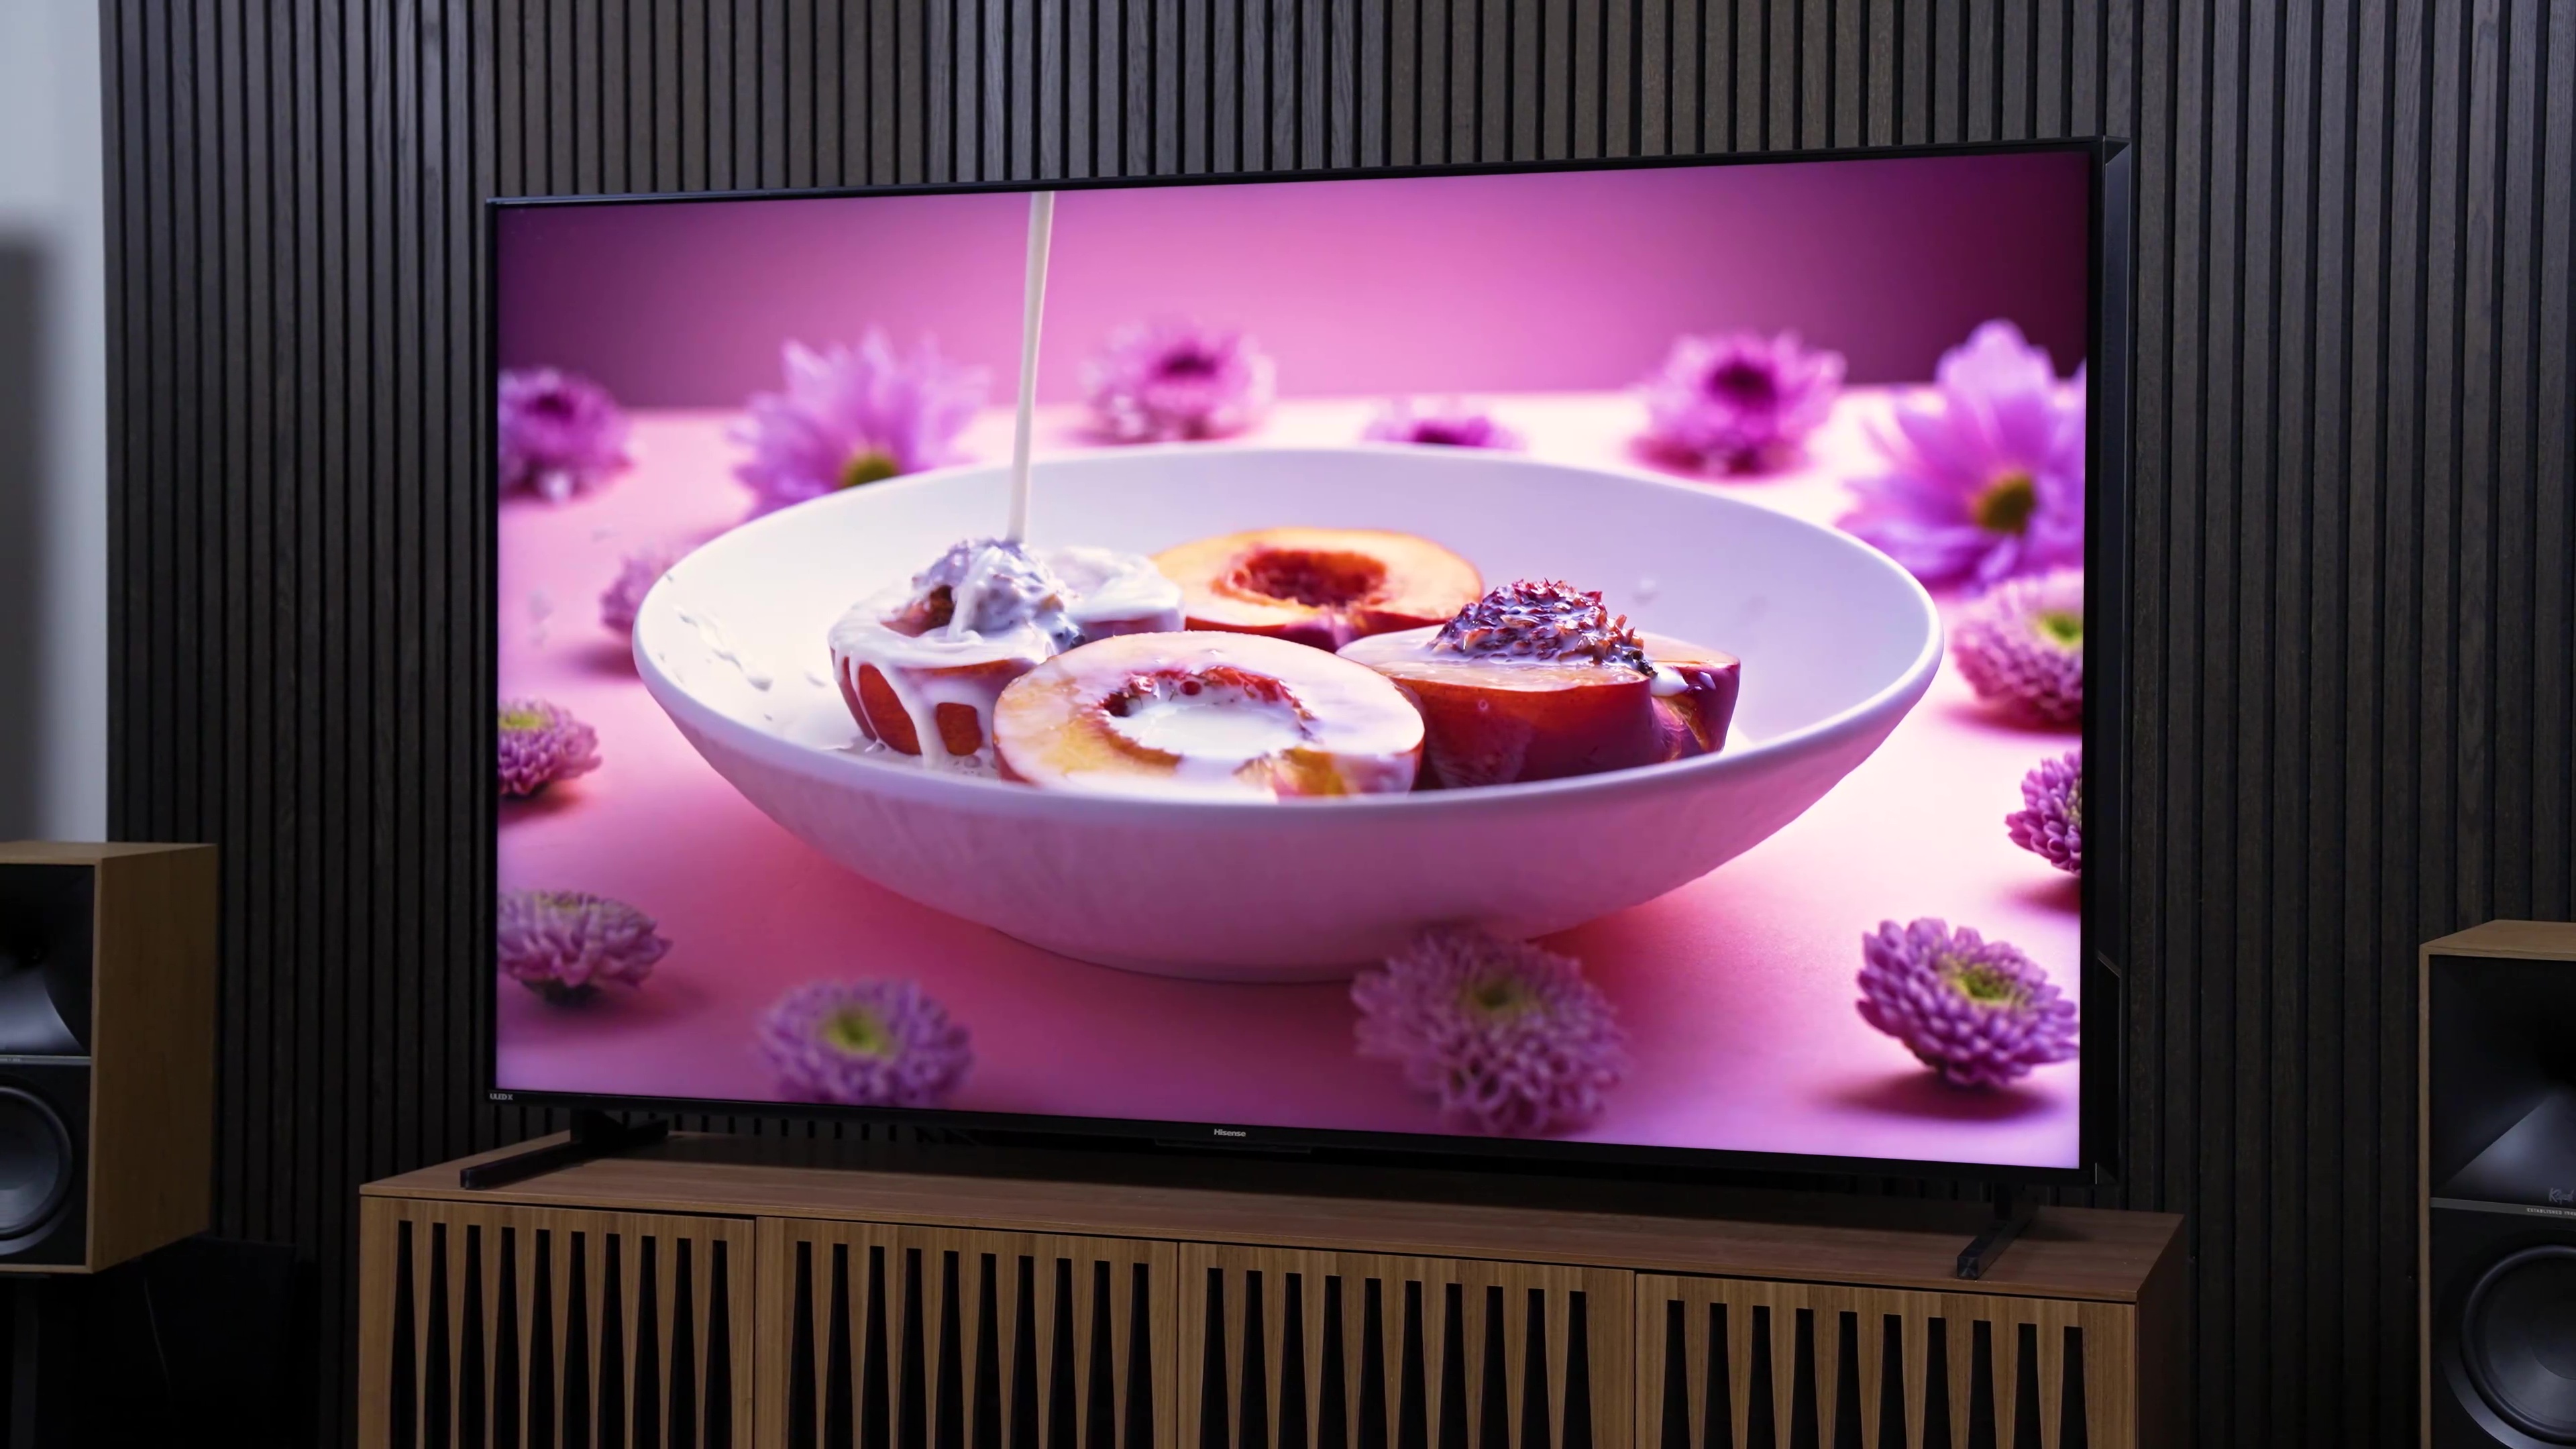 Hisense U7K 4K Mini LED TV Review - Are Hisense still VALUE FOR MONEY? 